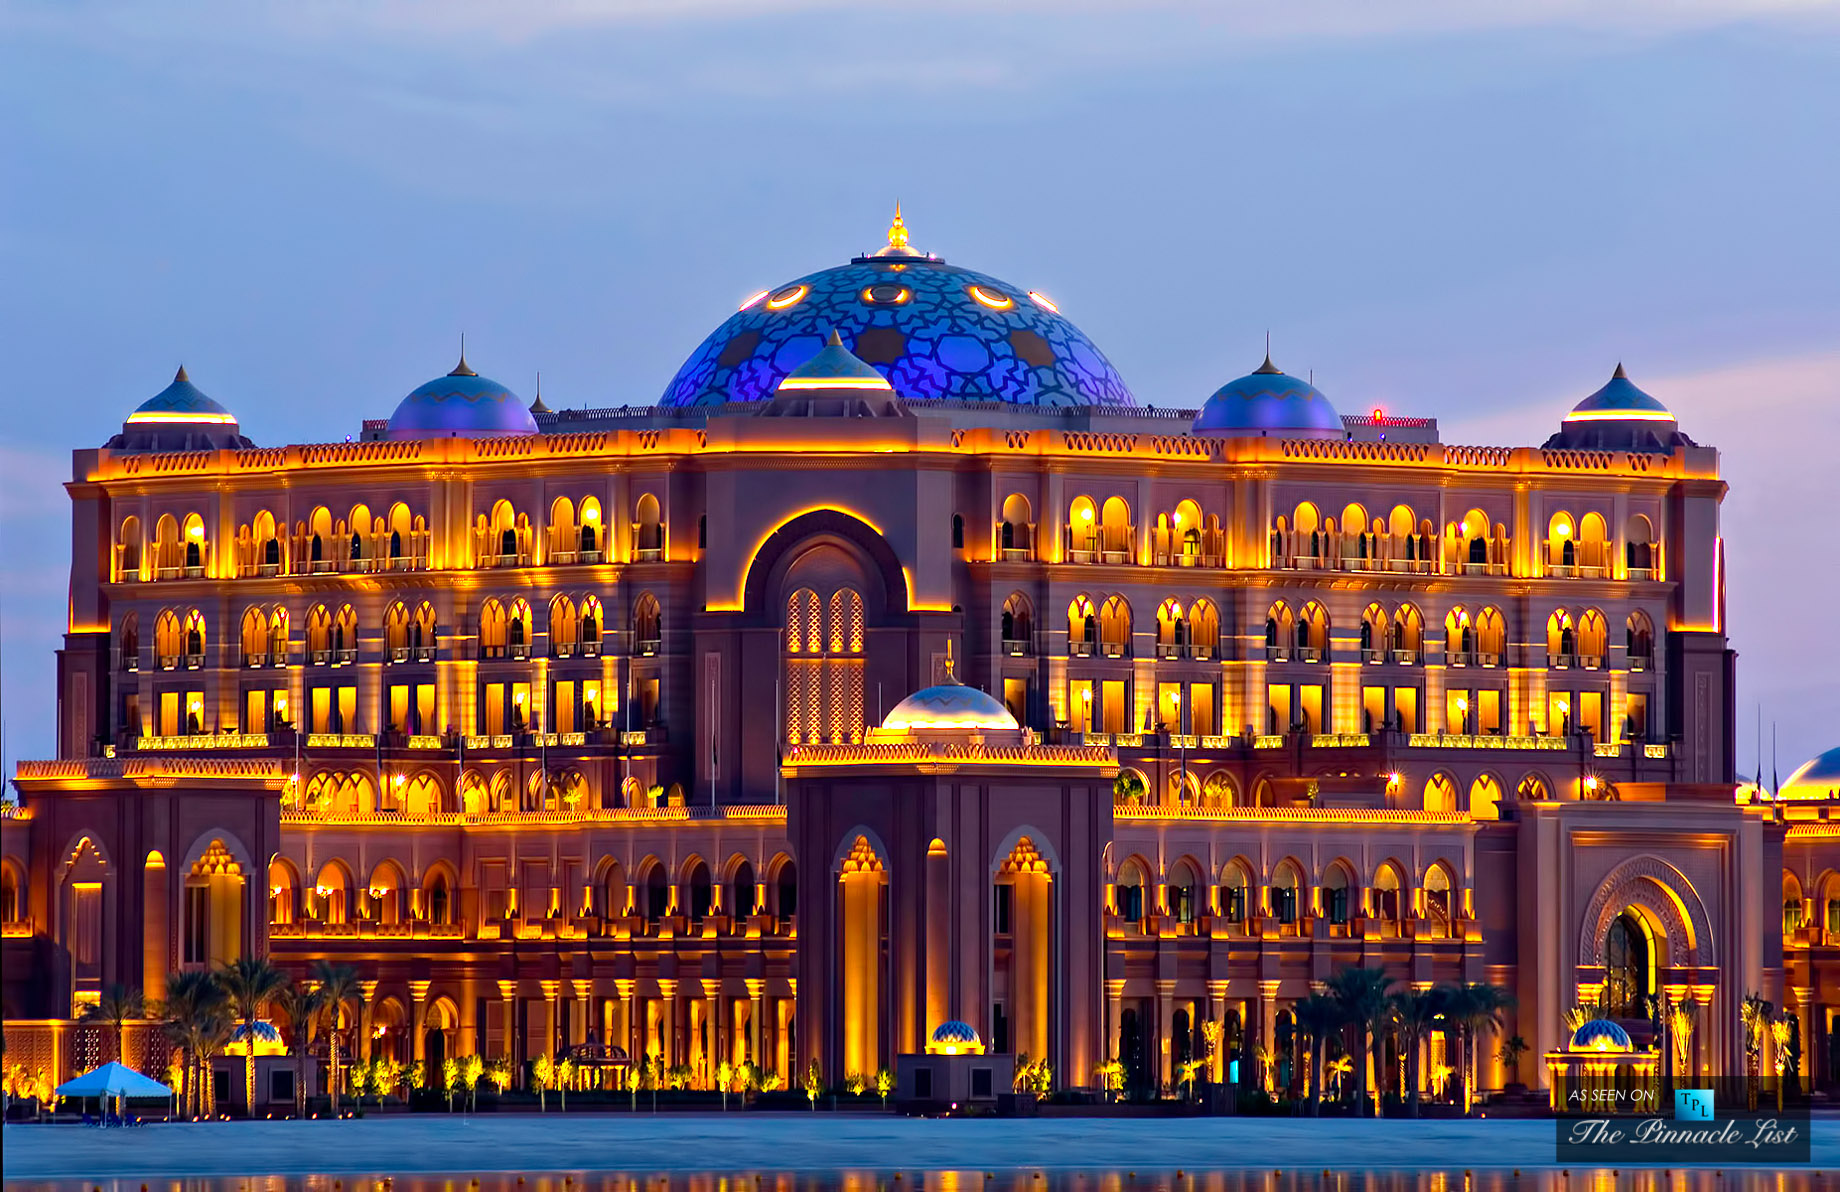 Emirates Palace – West Corniche Road, Abu Dhabi, United Arab Emirates